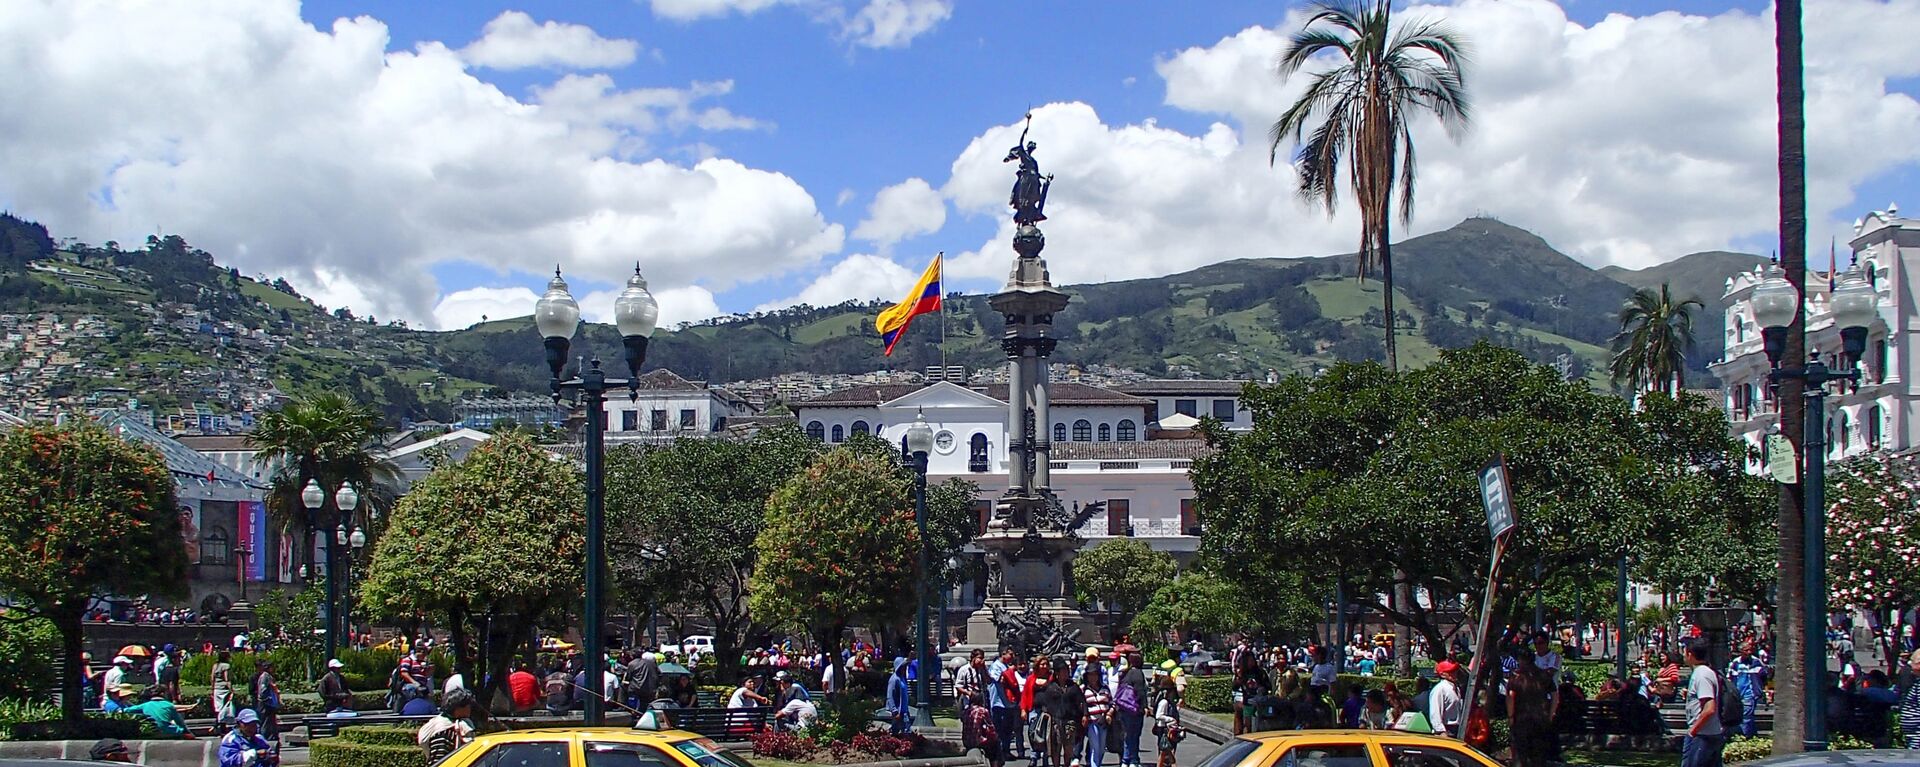 Quito, la capital de Ecuador - Sputnik Mundo, 1920, 02.08.2021